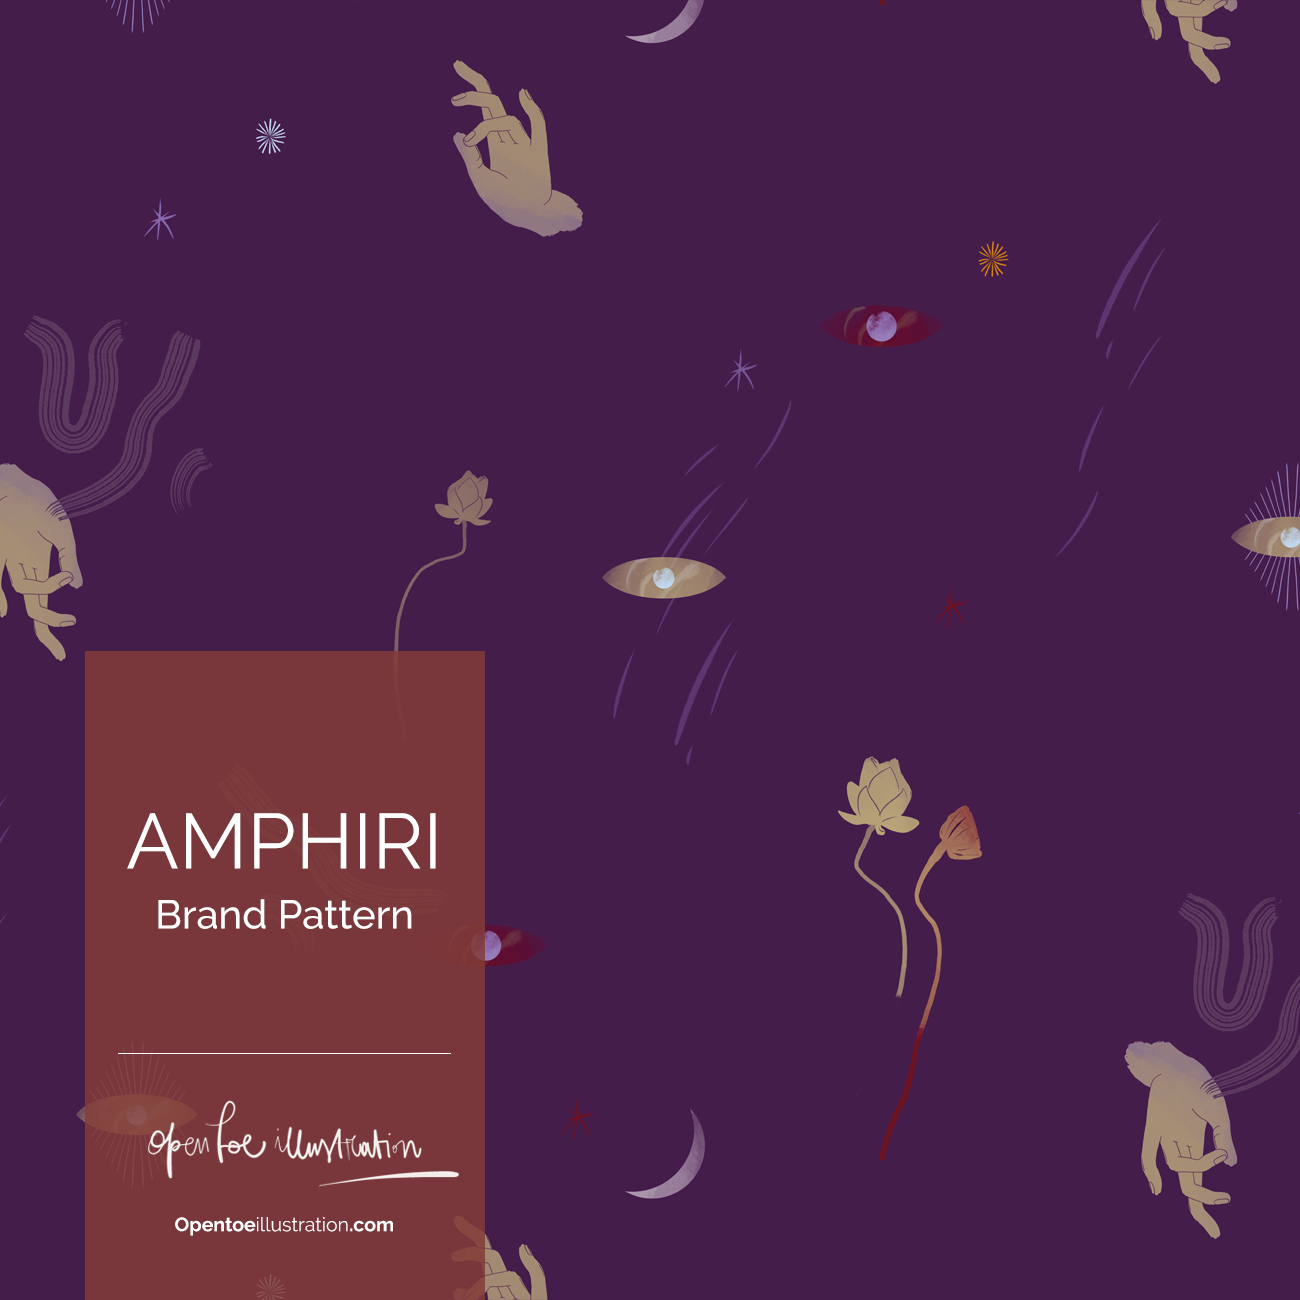 AMPHIRI brand pattern by Silvana Mariani